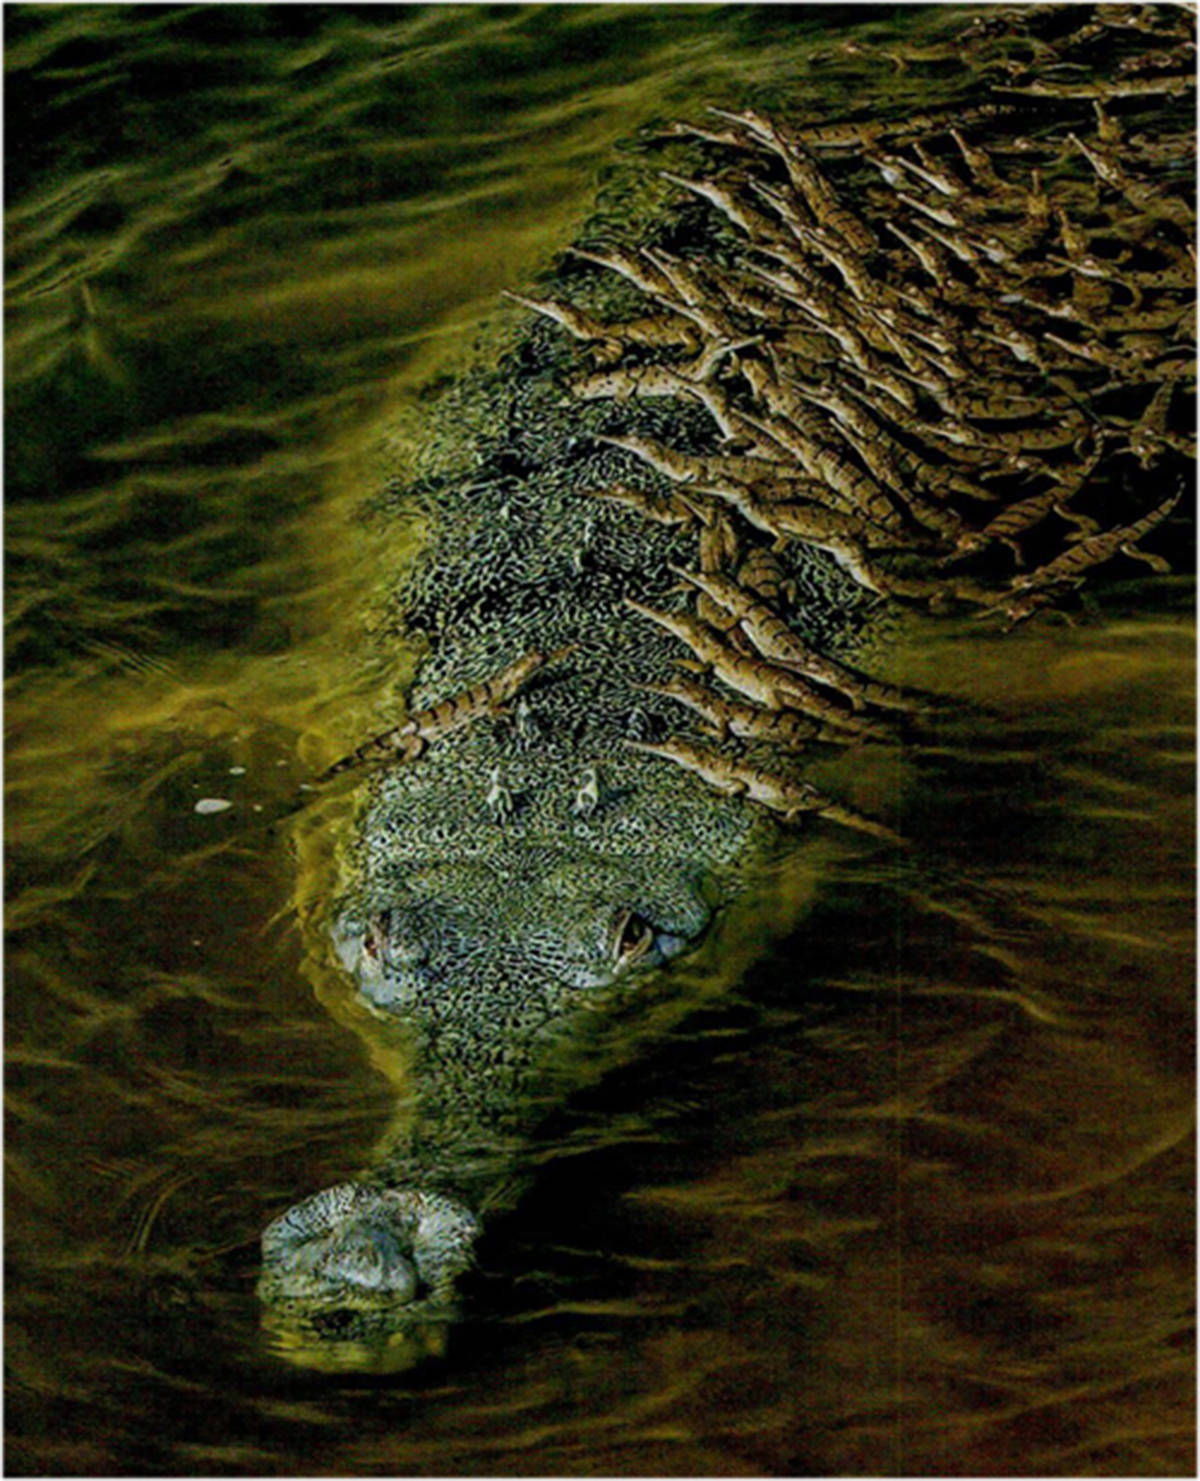 成年的恒河鳄便会狠心抛下幼鳄向下游游去,这些成年鳄鱼可以在7至8天